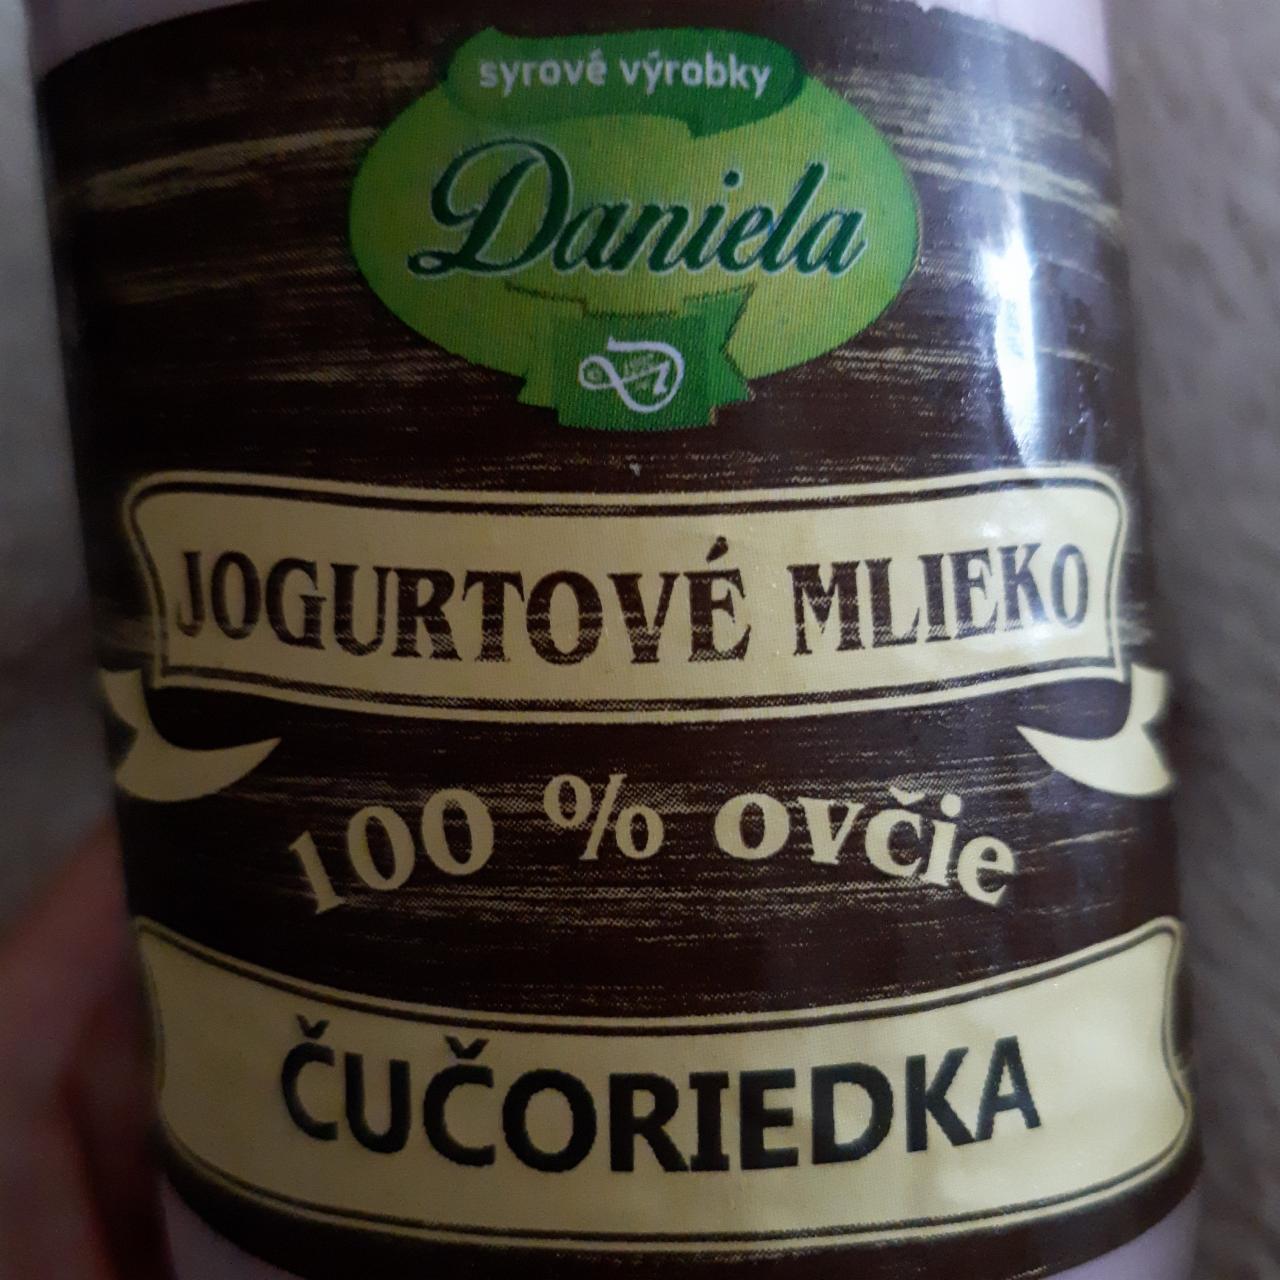 Fotografie - Jogurtové mlieko 100% ovčie Čučoriedka Daniela